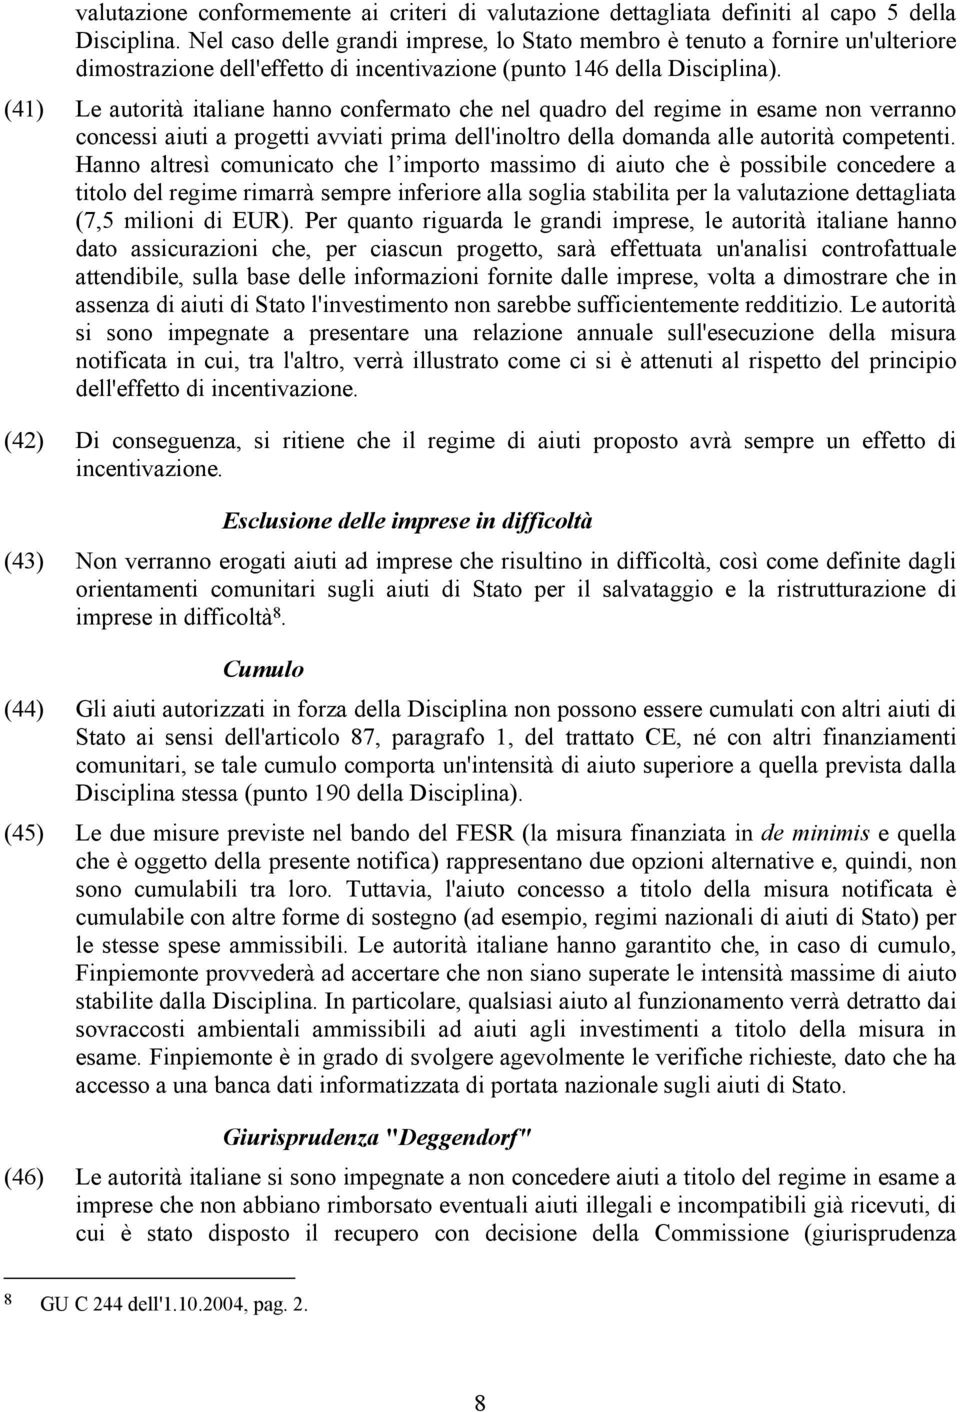 (41) Le autorità italiane hanno confermato che nel quadro del regime in esame non verranno concessi aiuti a progetti avviati prima dell'inoltro della domanda alle autorità competenti.